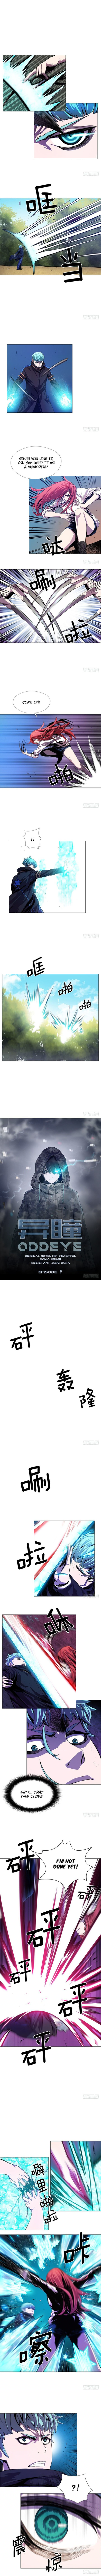 oddeye_5_1